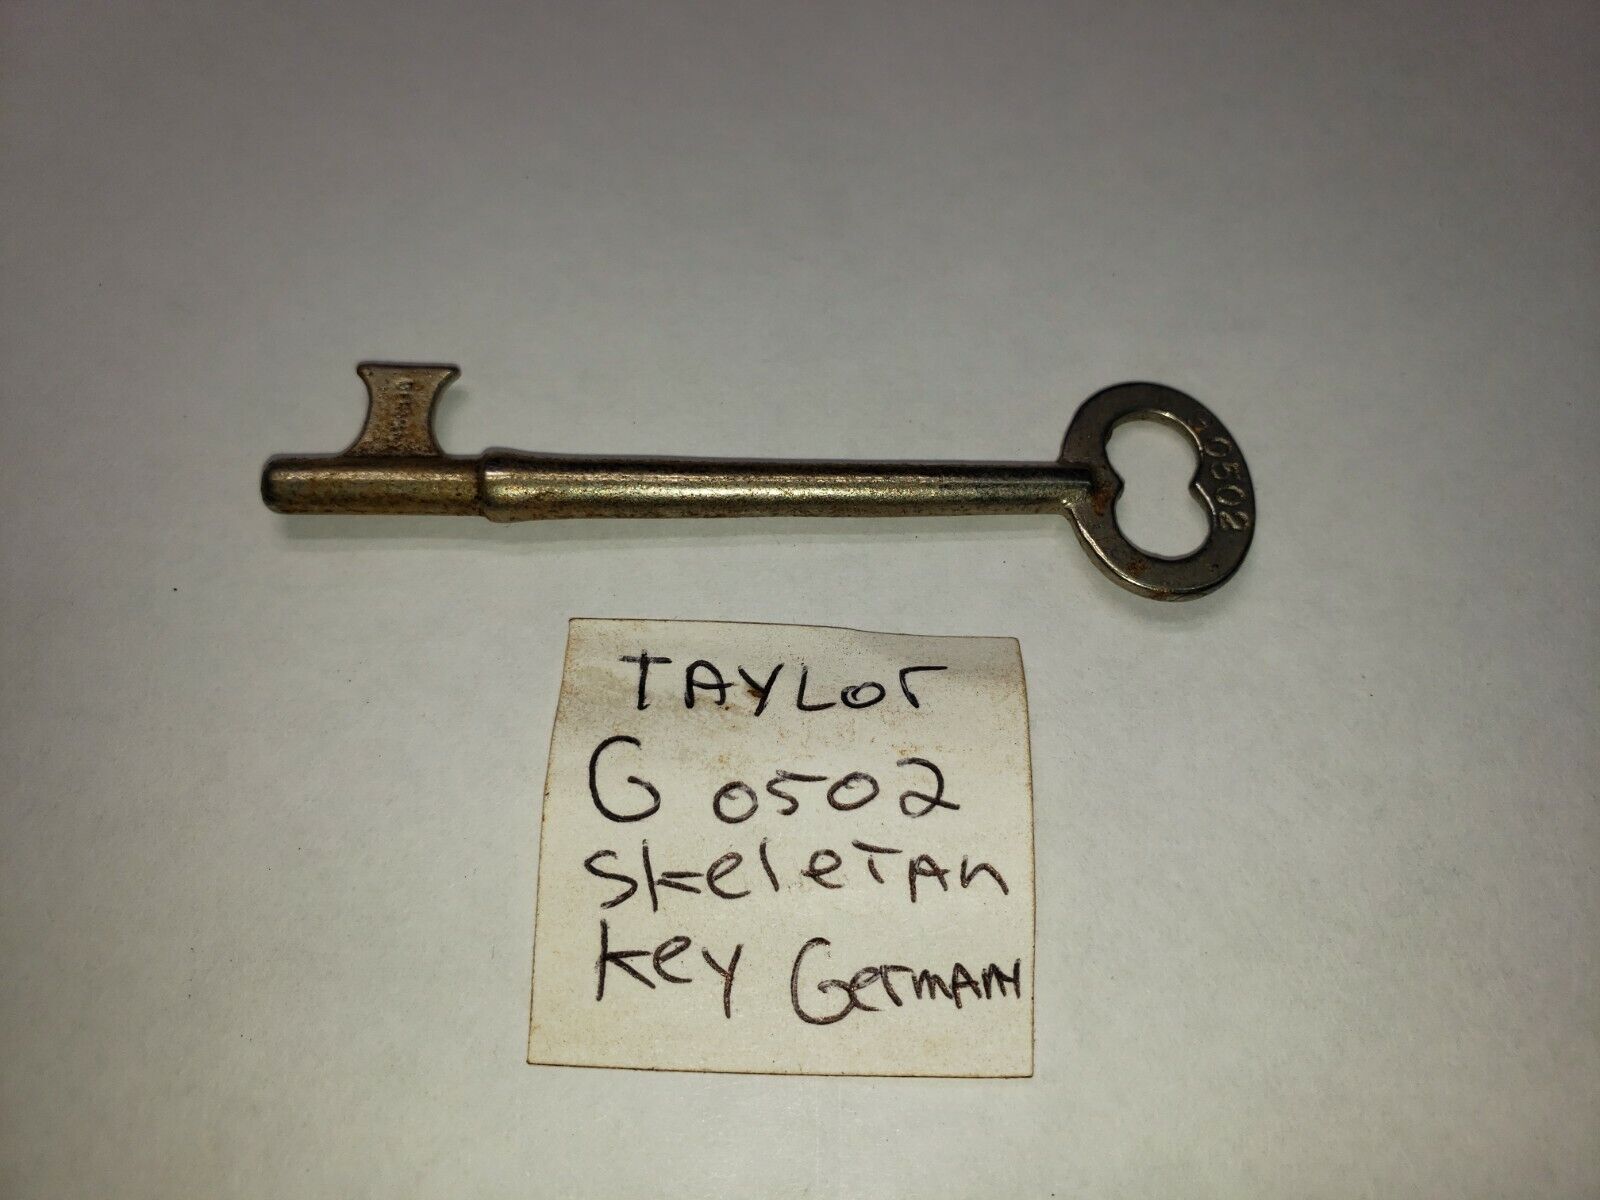 1 Antique Taylor #0502 Solid Barrel Skeleton Keys Germany solid steel 